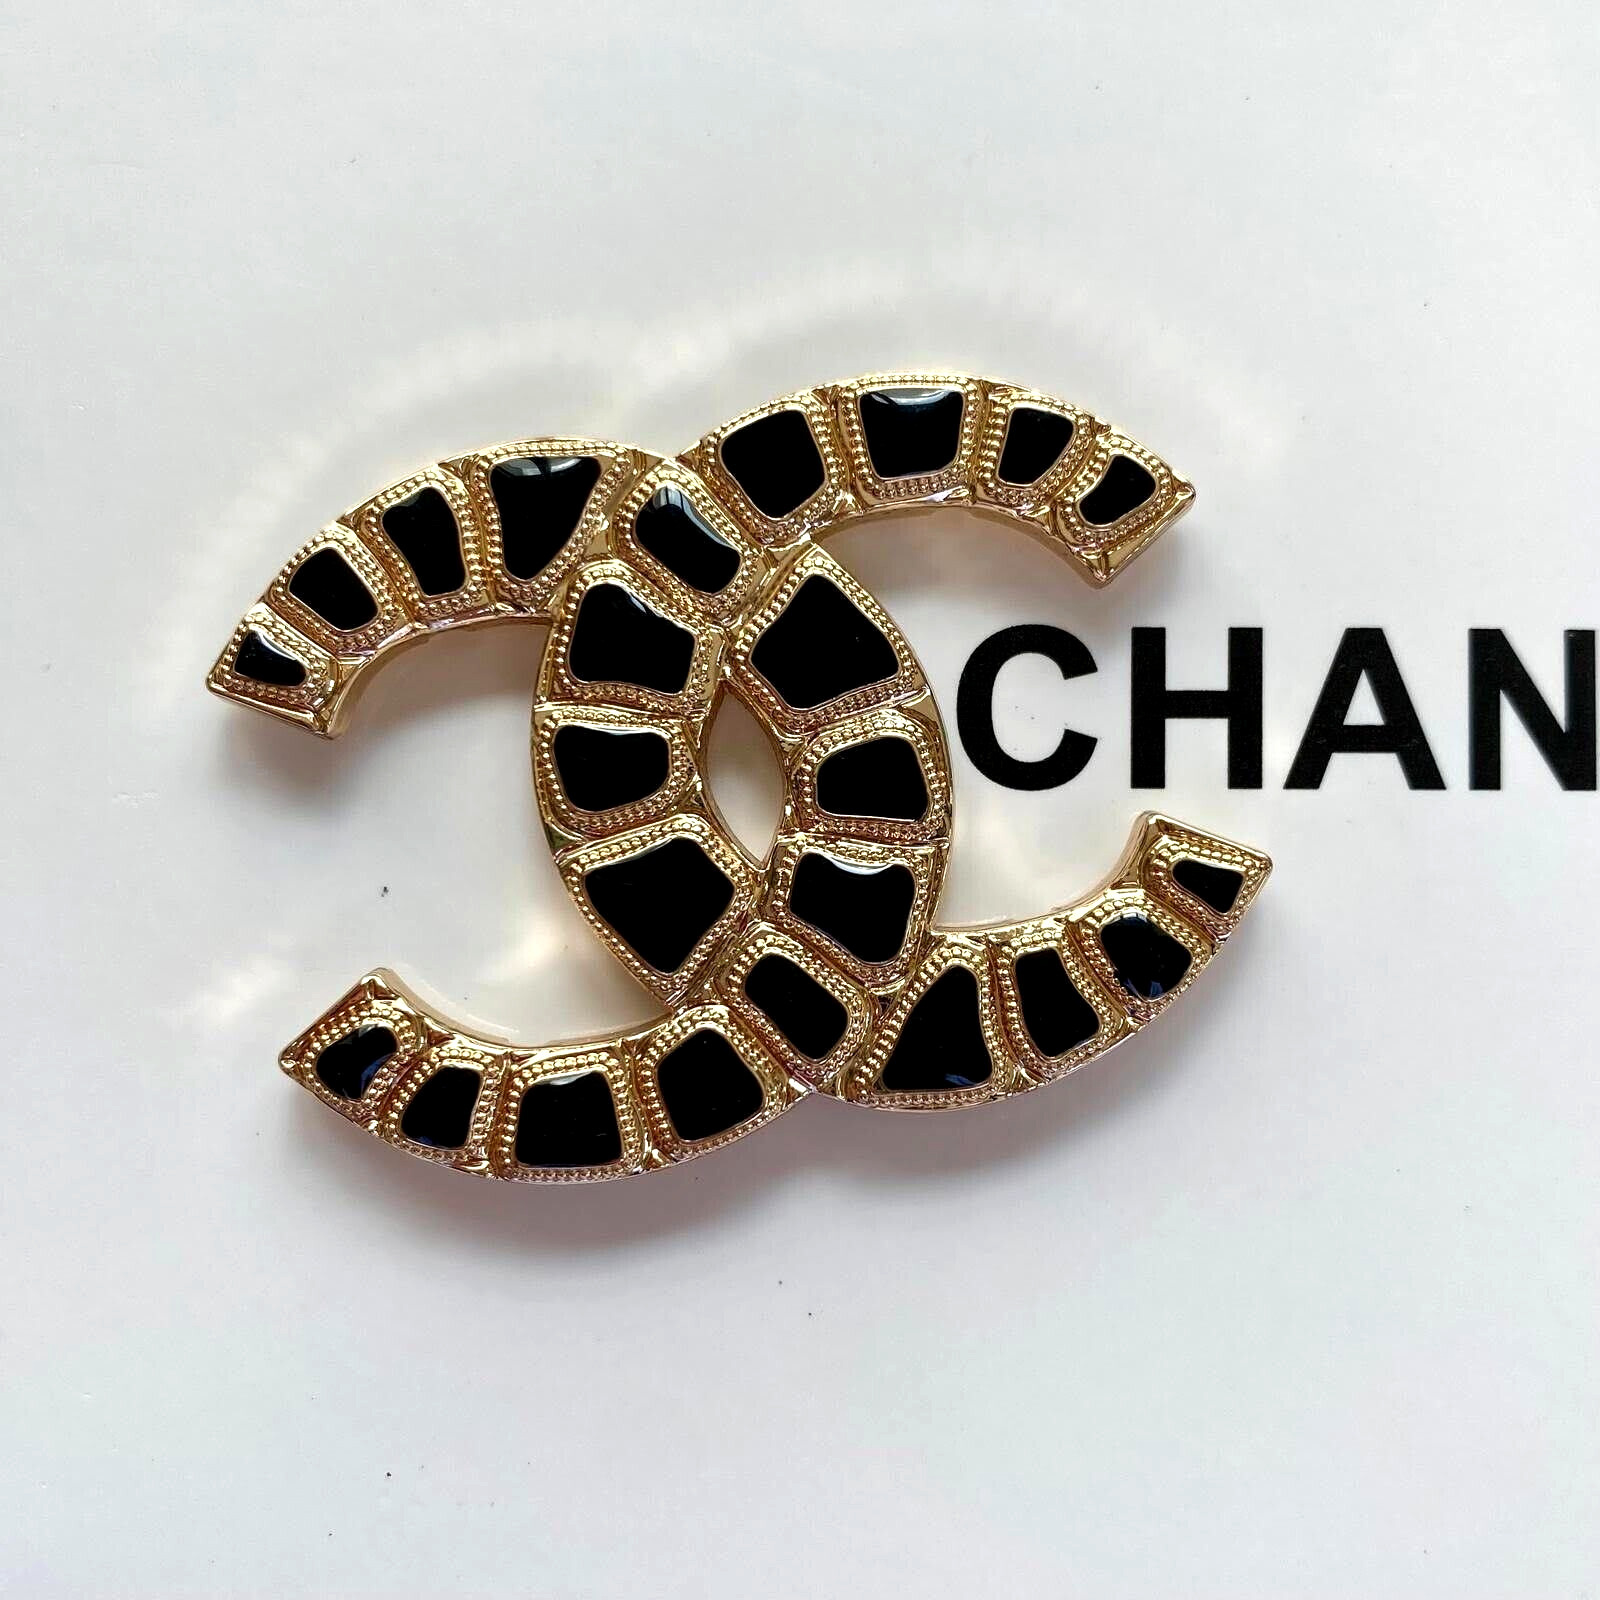 1 Vintage original large 49 mm x 36 mm Chanel CC Logo gold tone button 4 holes